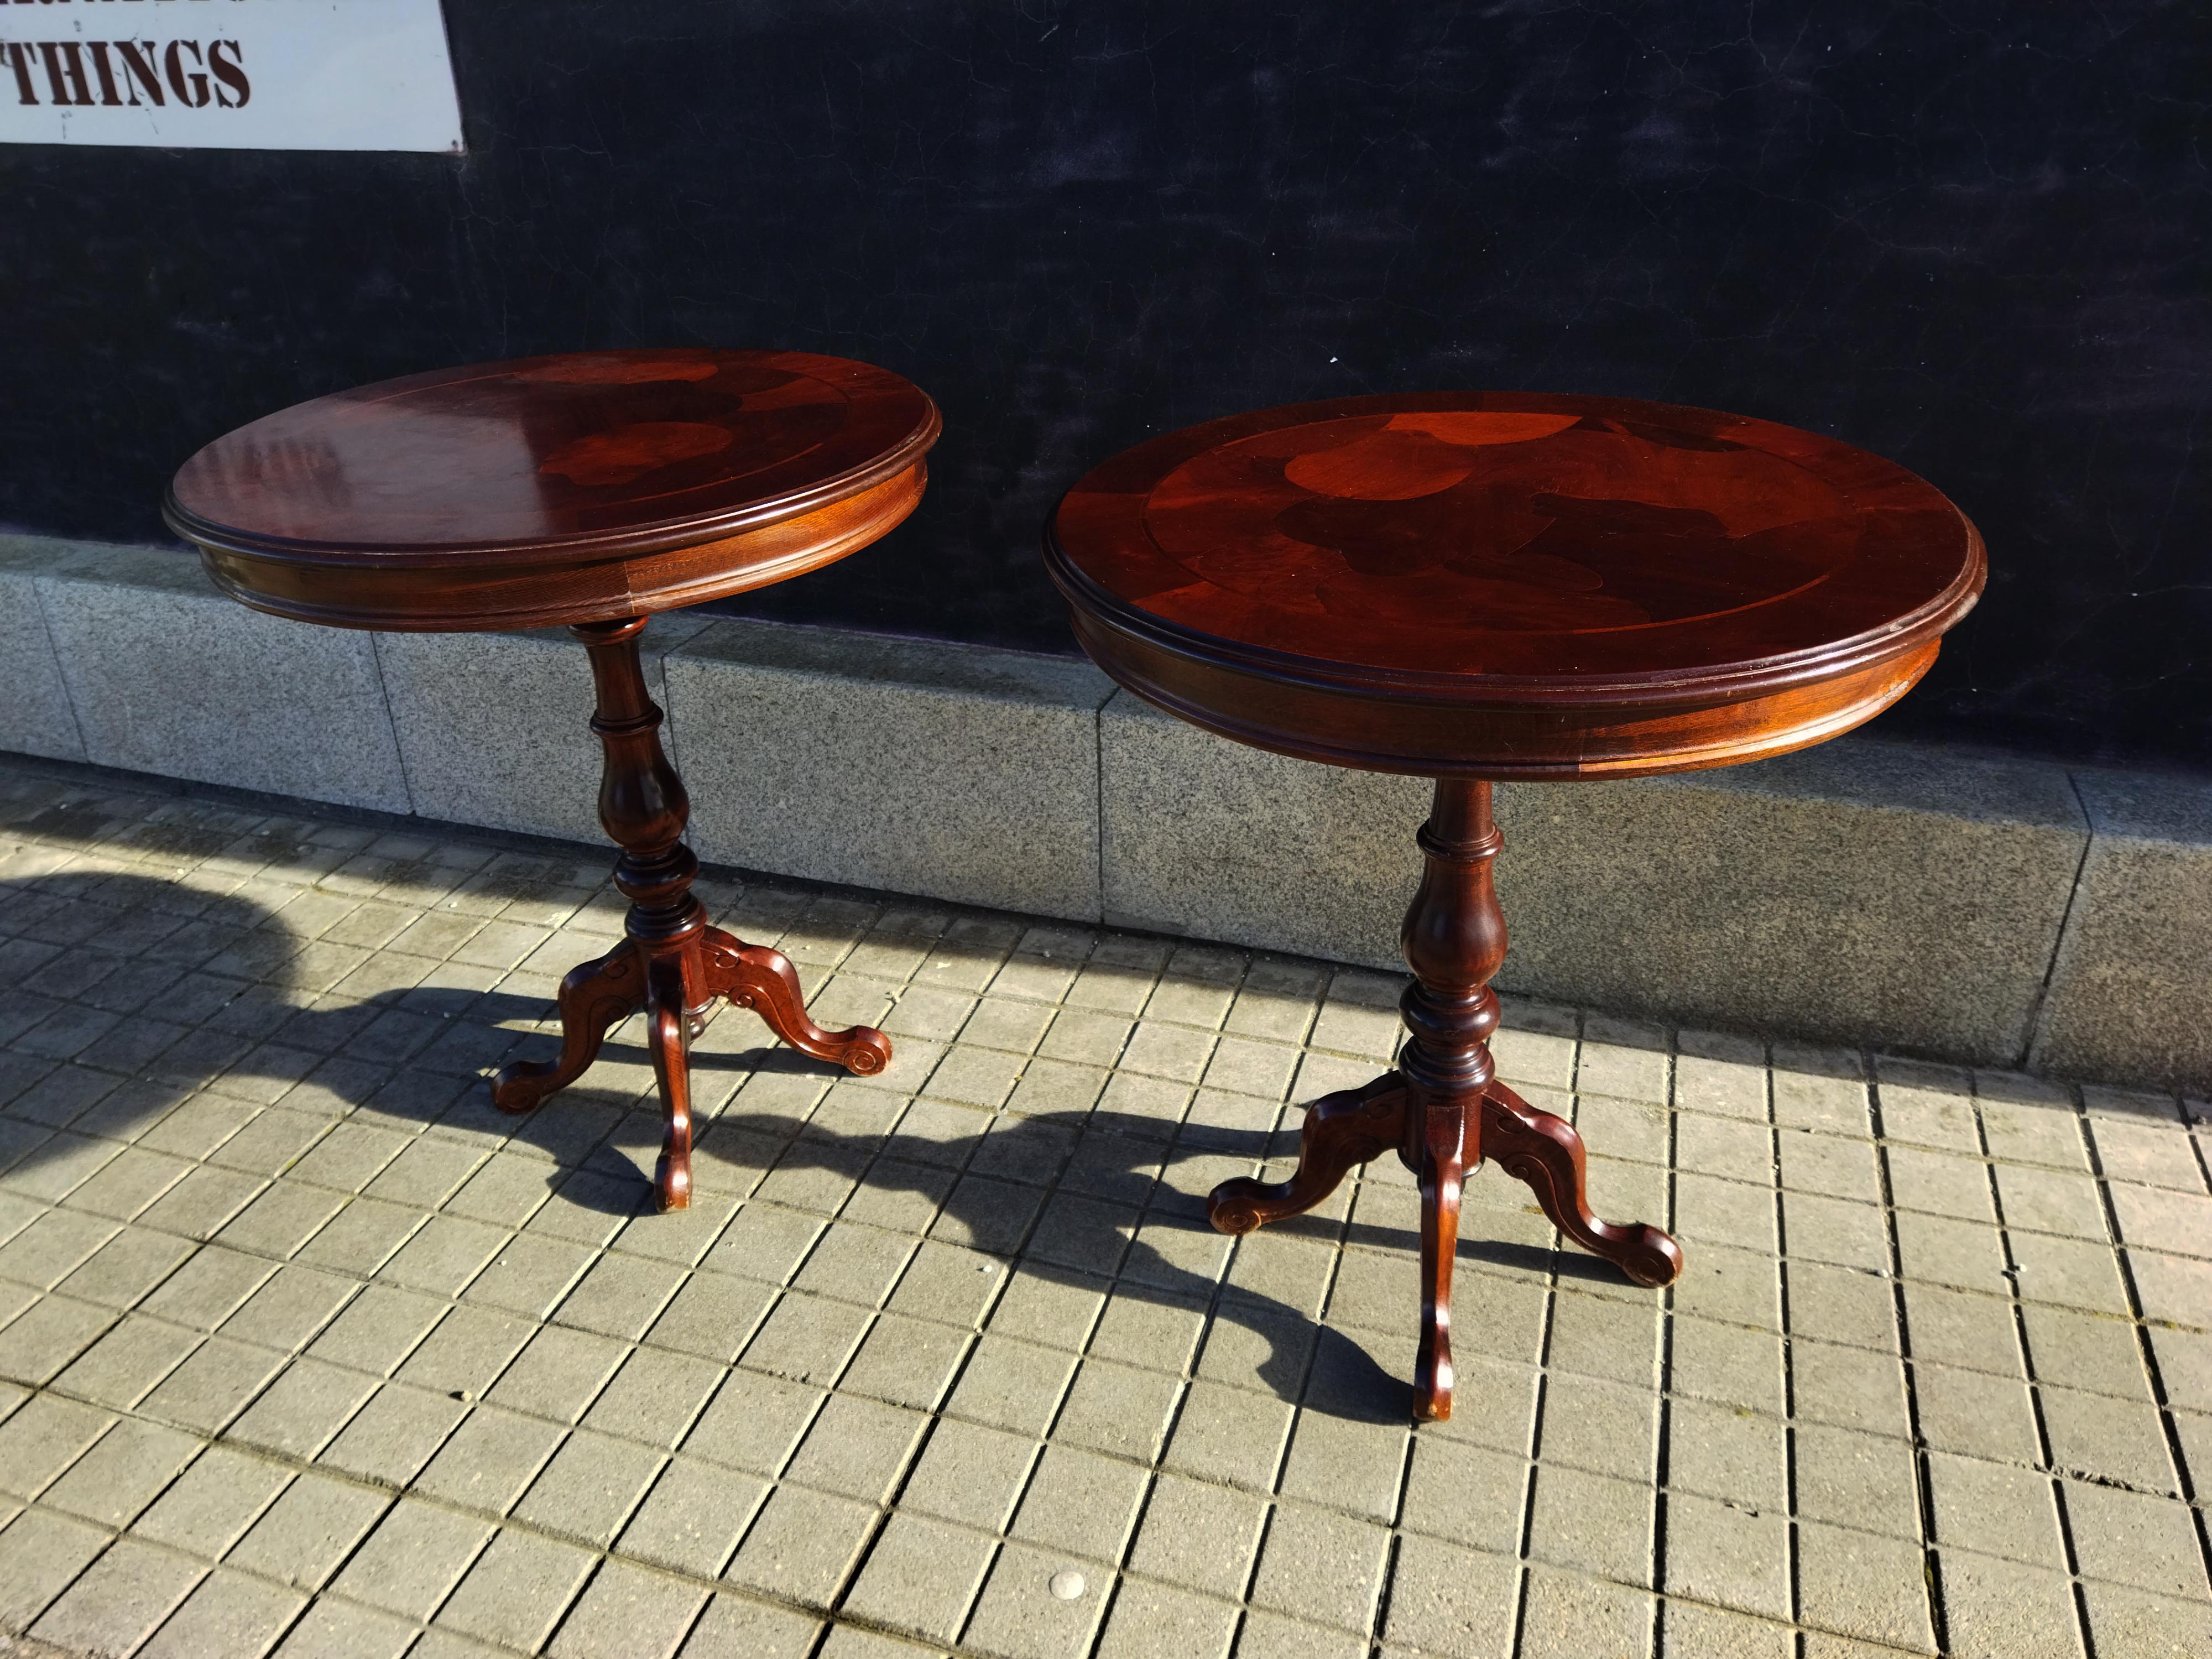 Diese Tische sind rund auf einem Dreibein Luis Felipe Stil, Queen Anne Stil Beistelltisch

Schöne Holztische. Dieses Paar Tische aus der Mitte des Jahrhunderts ist in perfektem Zustand und hat seine wertvolle ursprüngliche Oberfläche mit einer